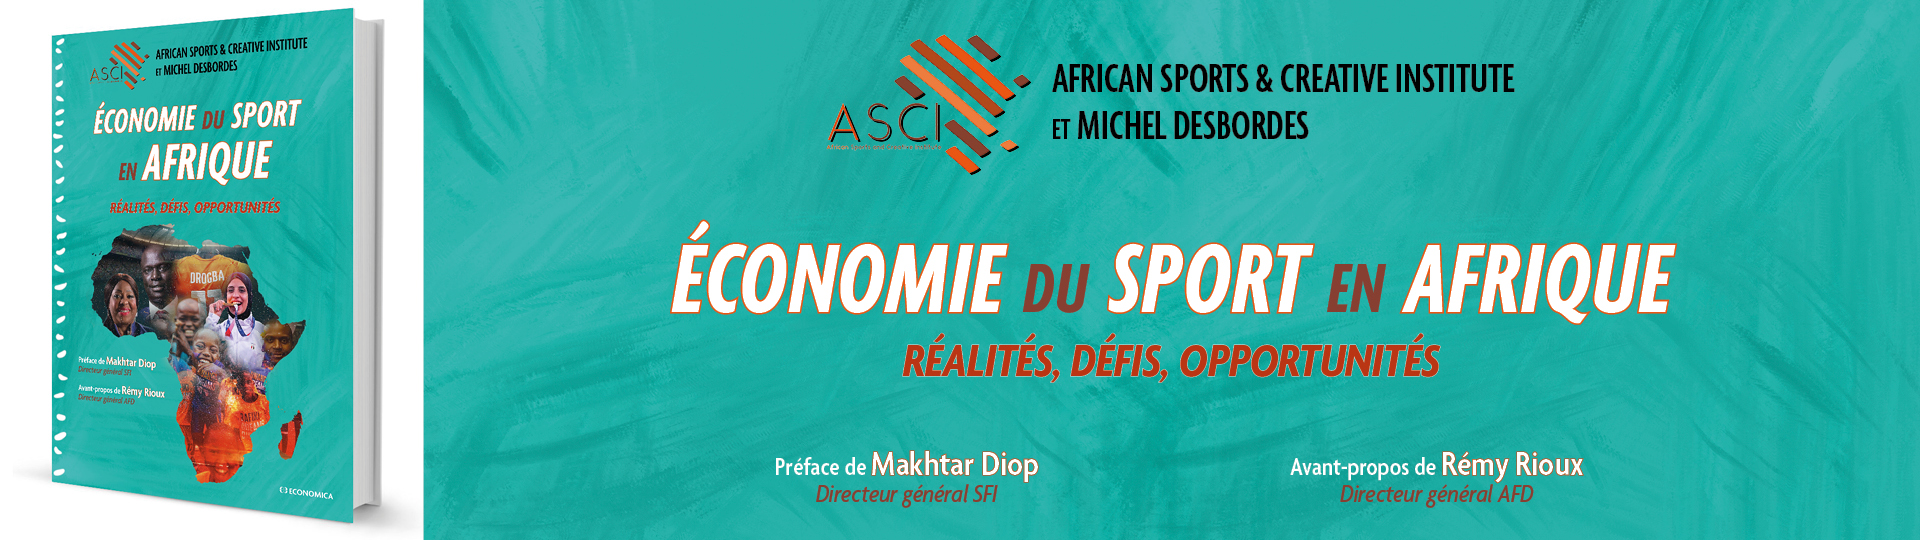 Économie du sport en Afrique - ASCI - Desbordes M.